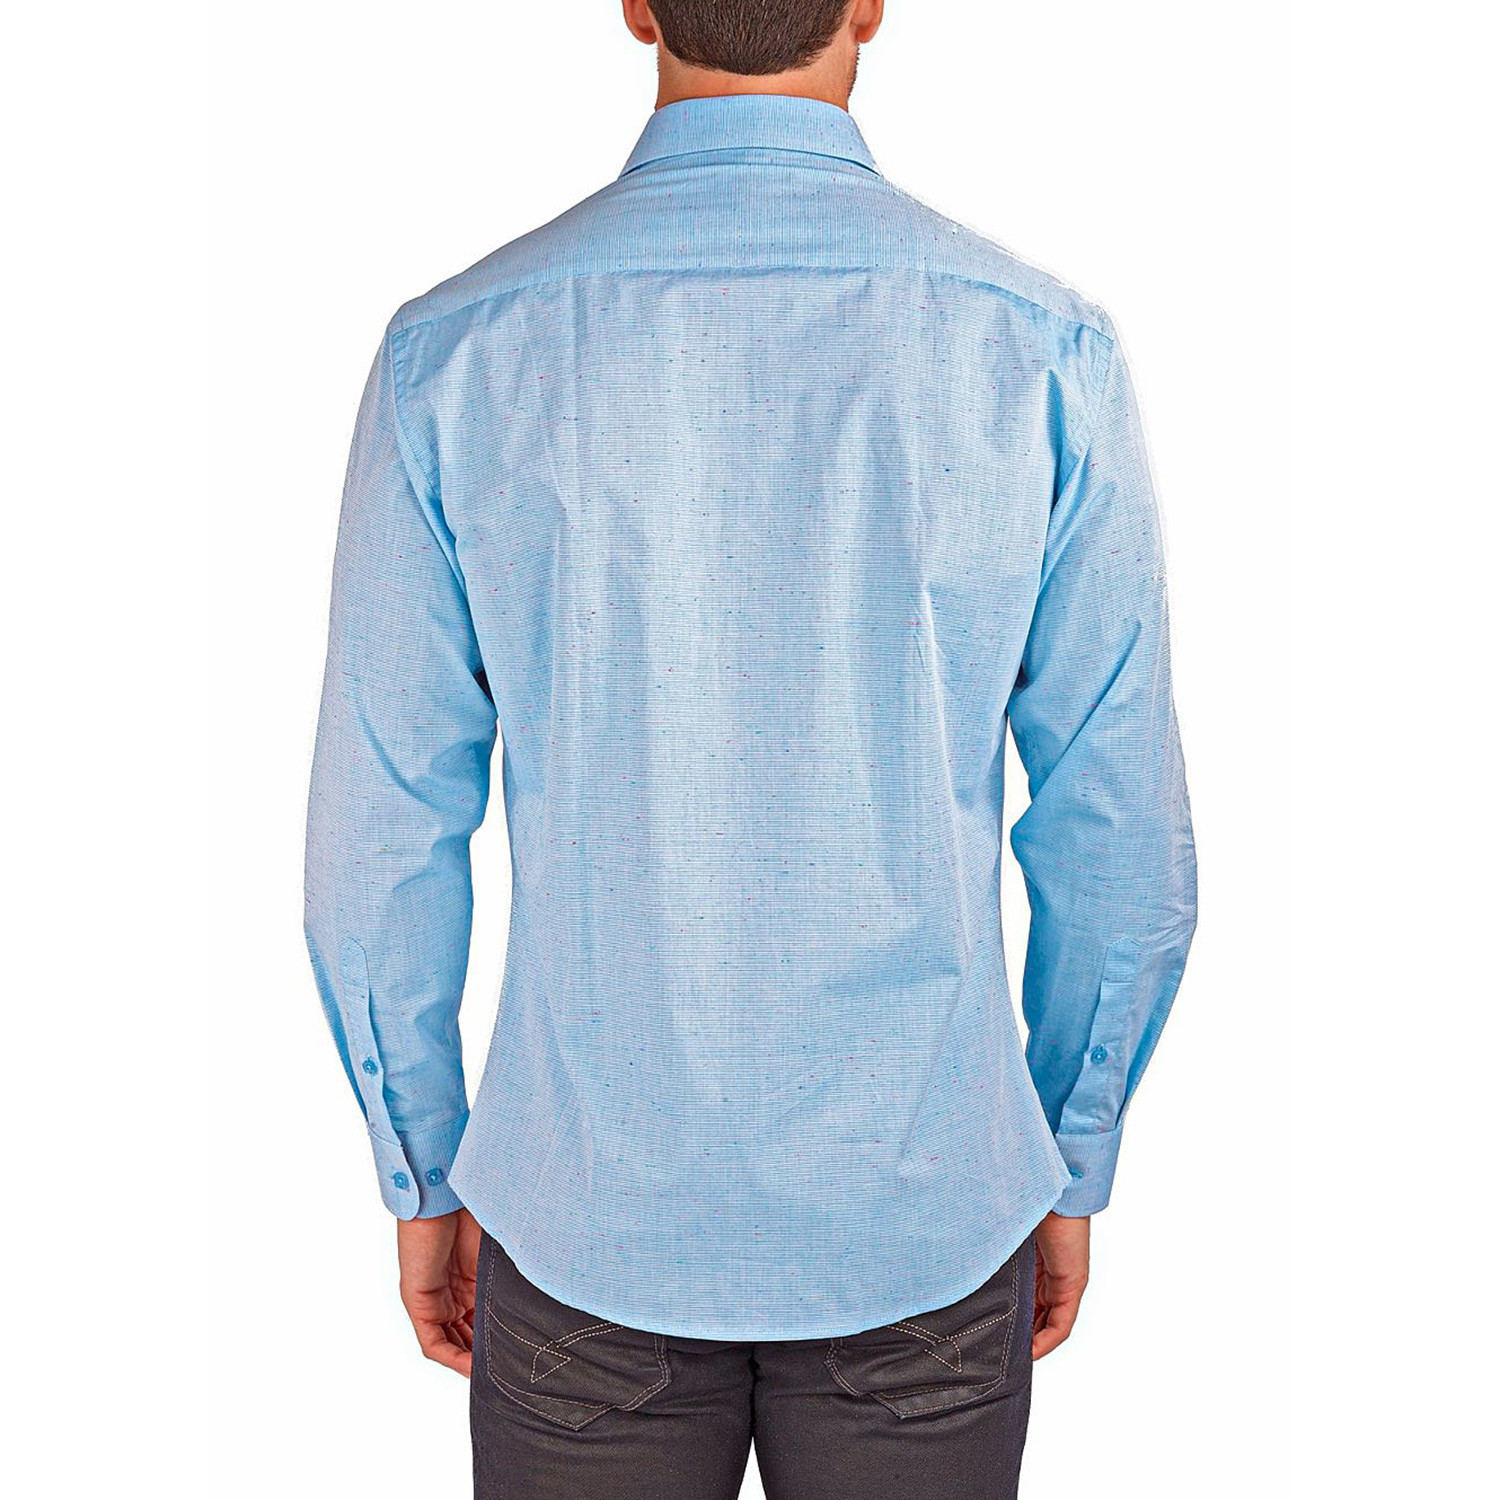 Linen Texture Long-Sleeve Button-Up Shirt // Light Blue (S) - Clearance ...